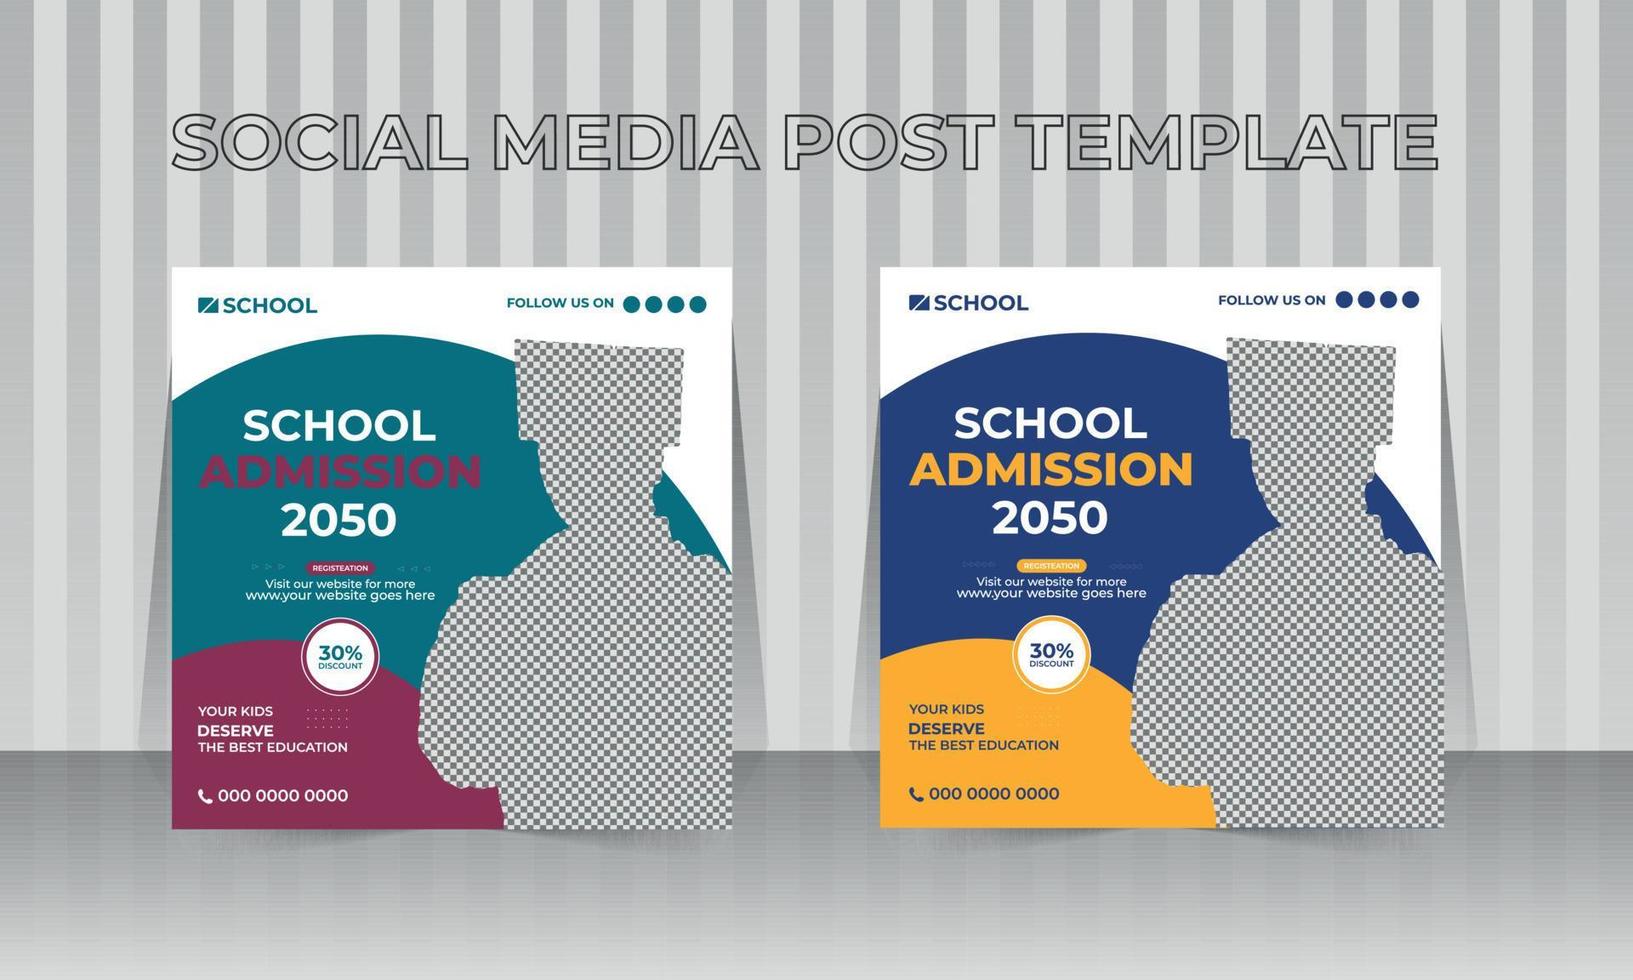 plantilla de diseño de banner de portada de redes sociales de admisión escolar vector